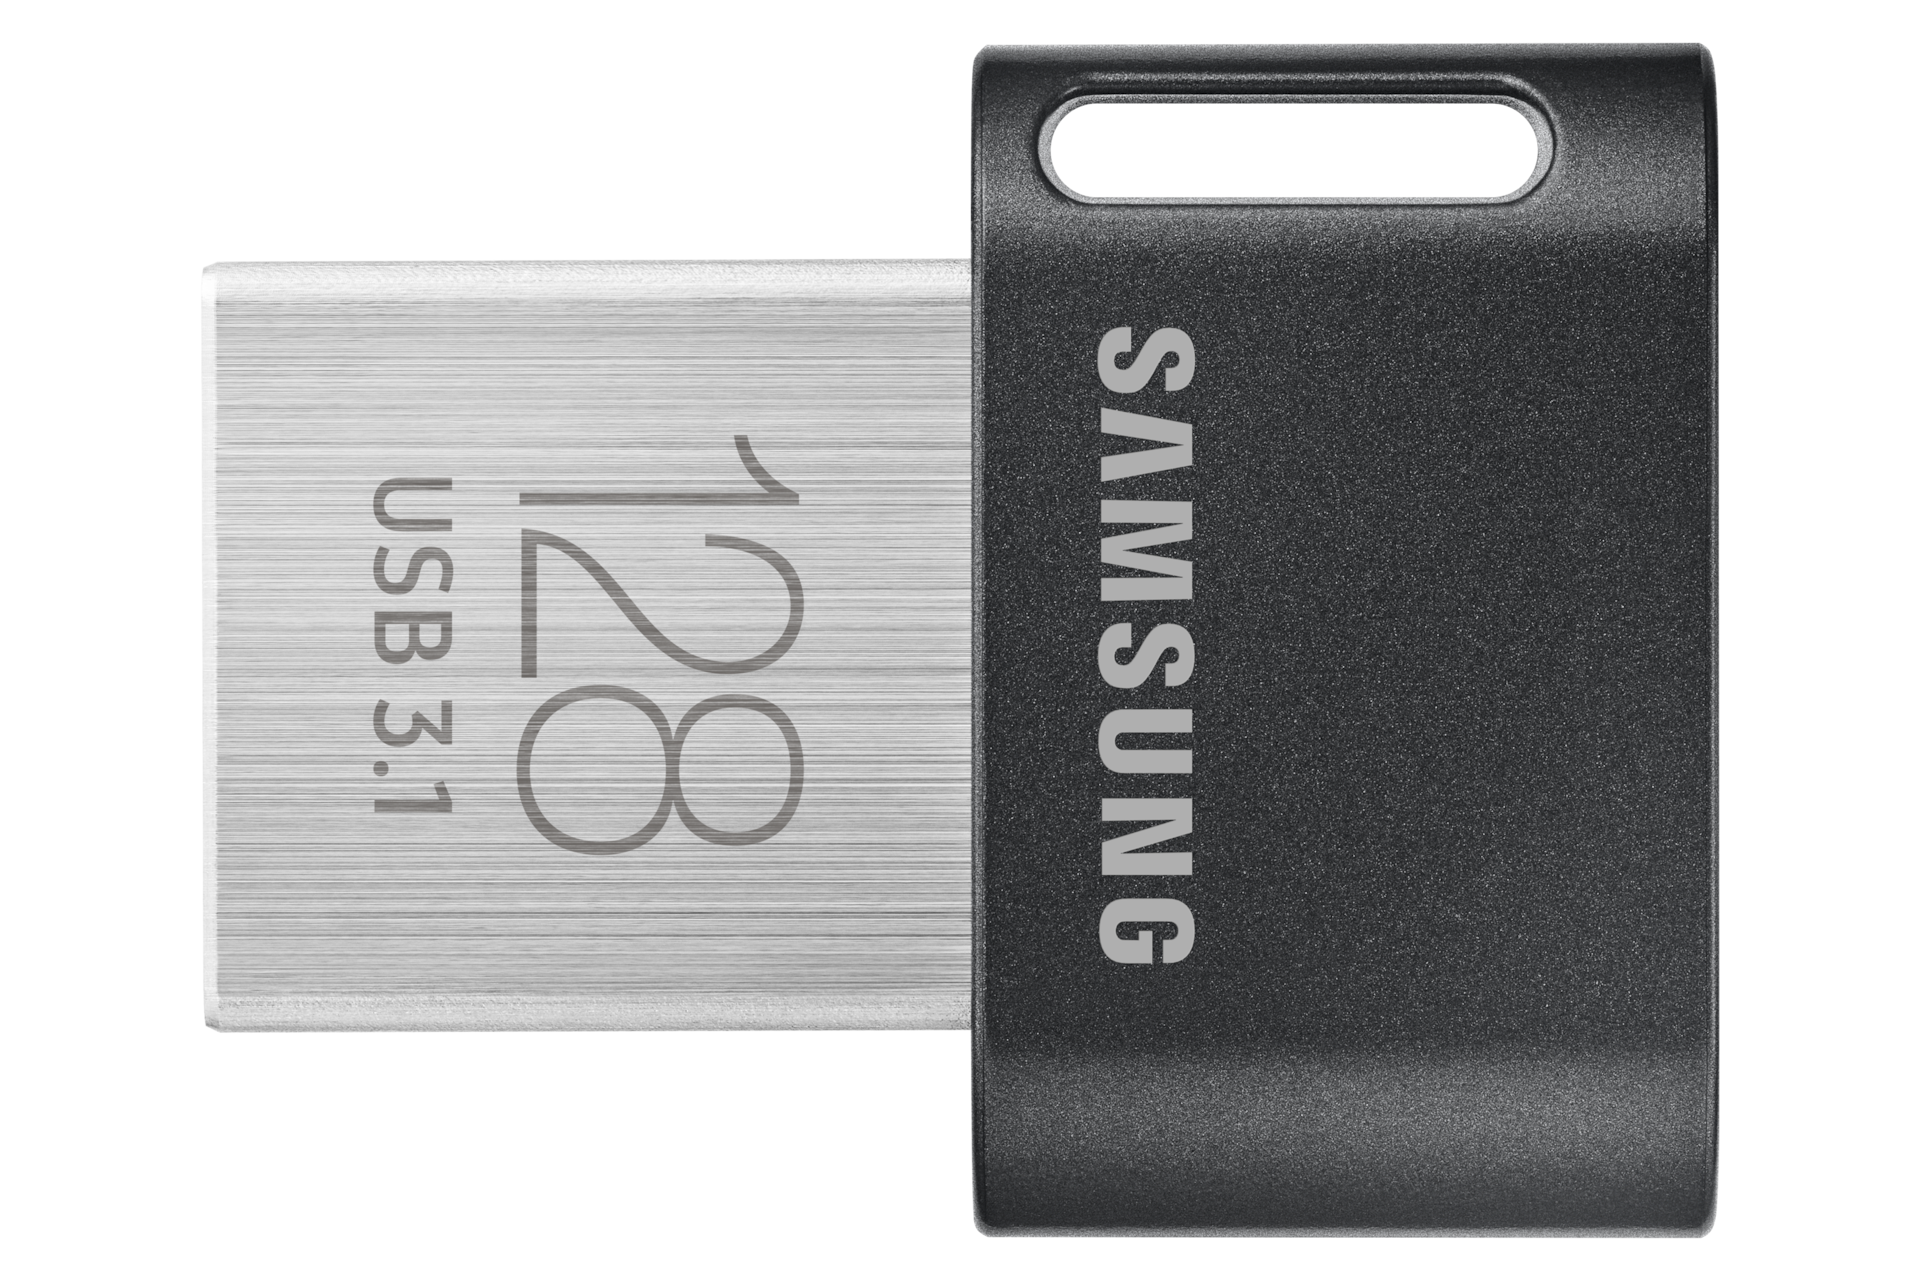 Generic Lot De 3 Supports De Clé USB Pour Smartphone - Micro USB